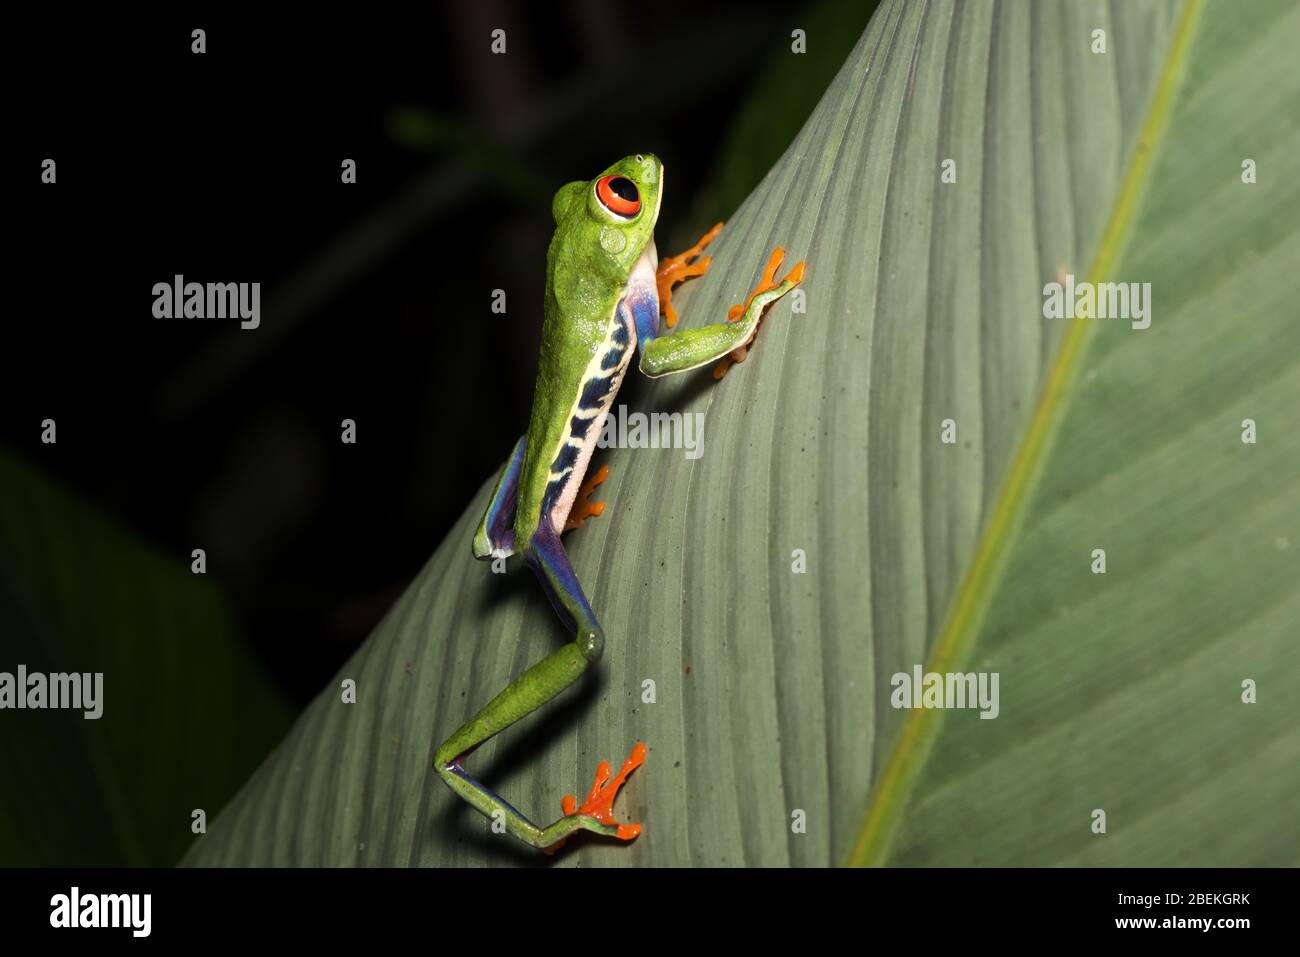 Fotografía nocturna de una rana de ojos rojos o una rana de hojas, o una rana de hojas de gaudy (Agalychnis callidryas) posando sobre un tallo de una planta tropical. Costa Rica. Foto de stock